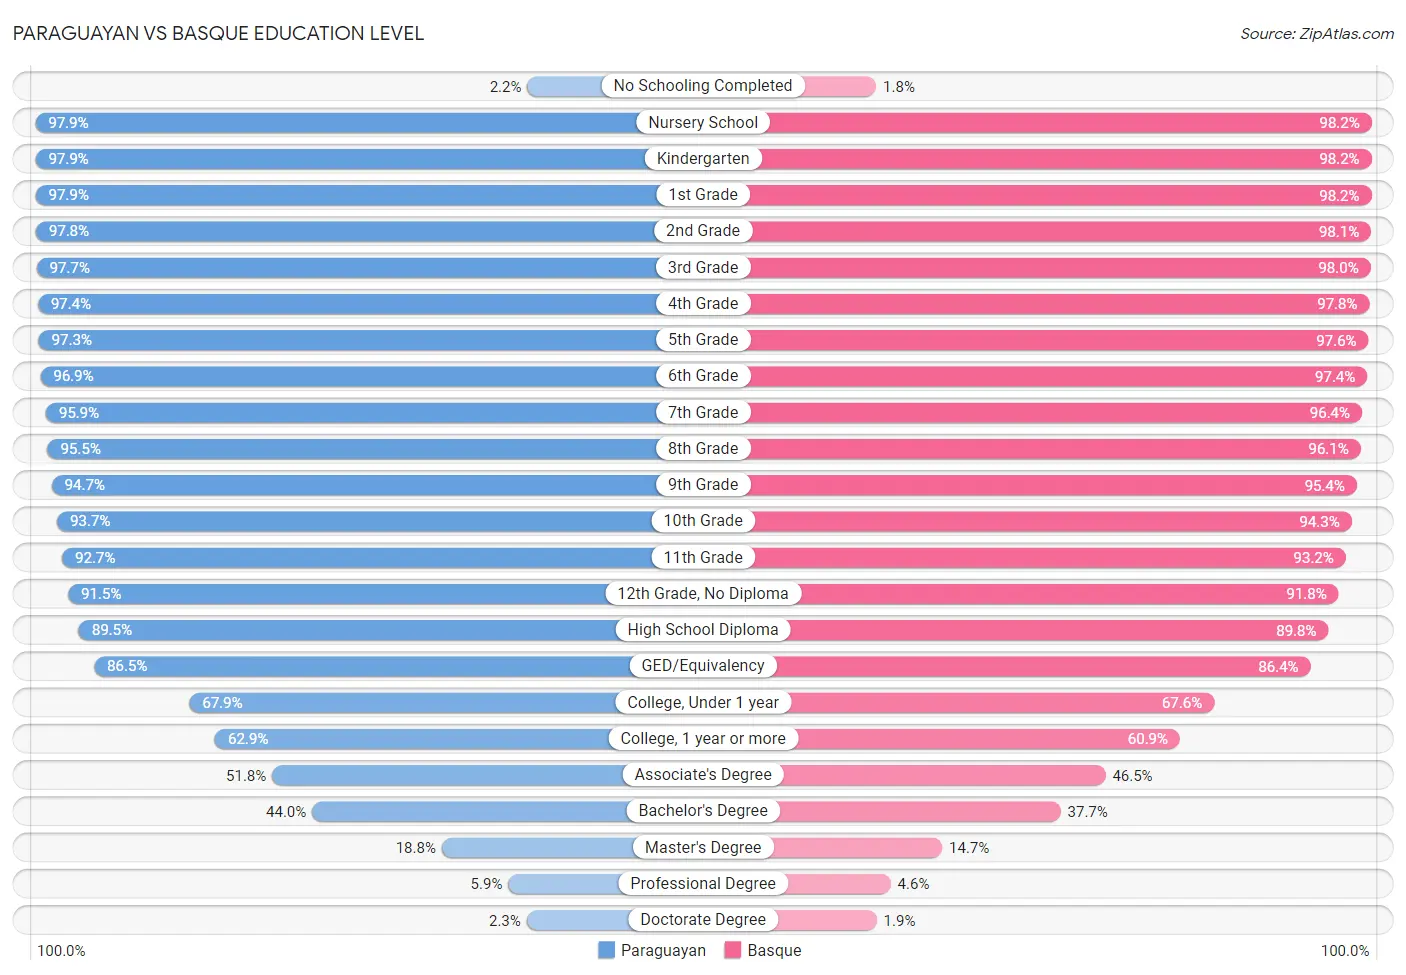 Paraguayan vs Basque Education Level